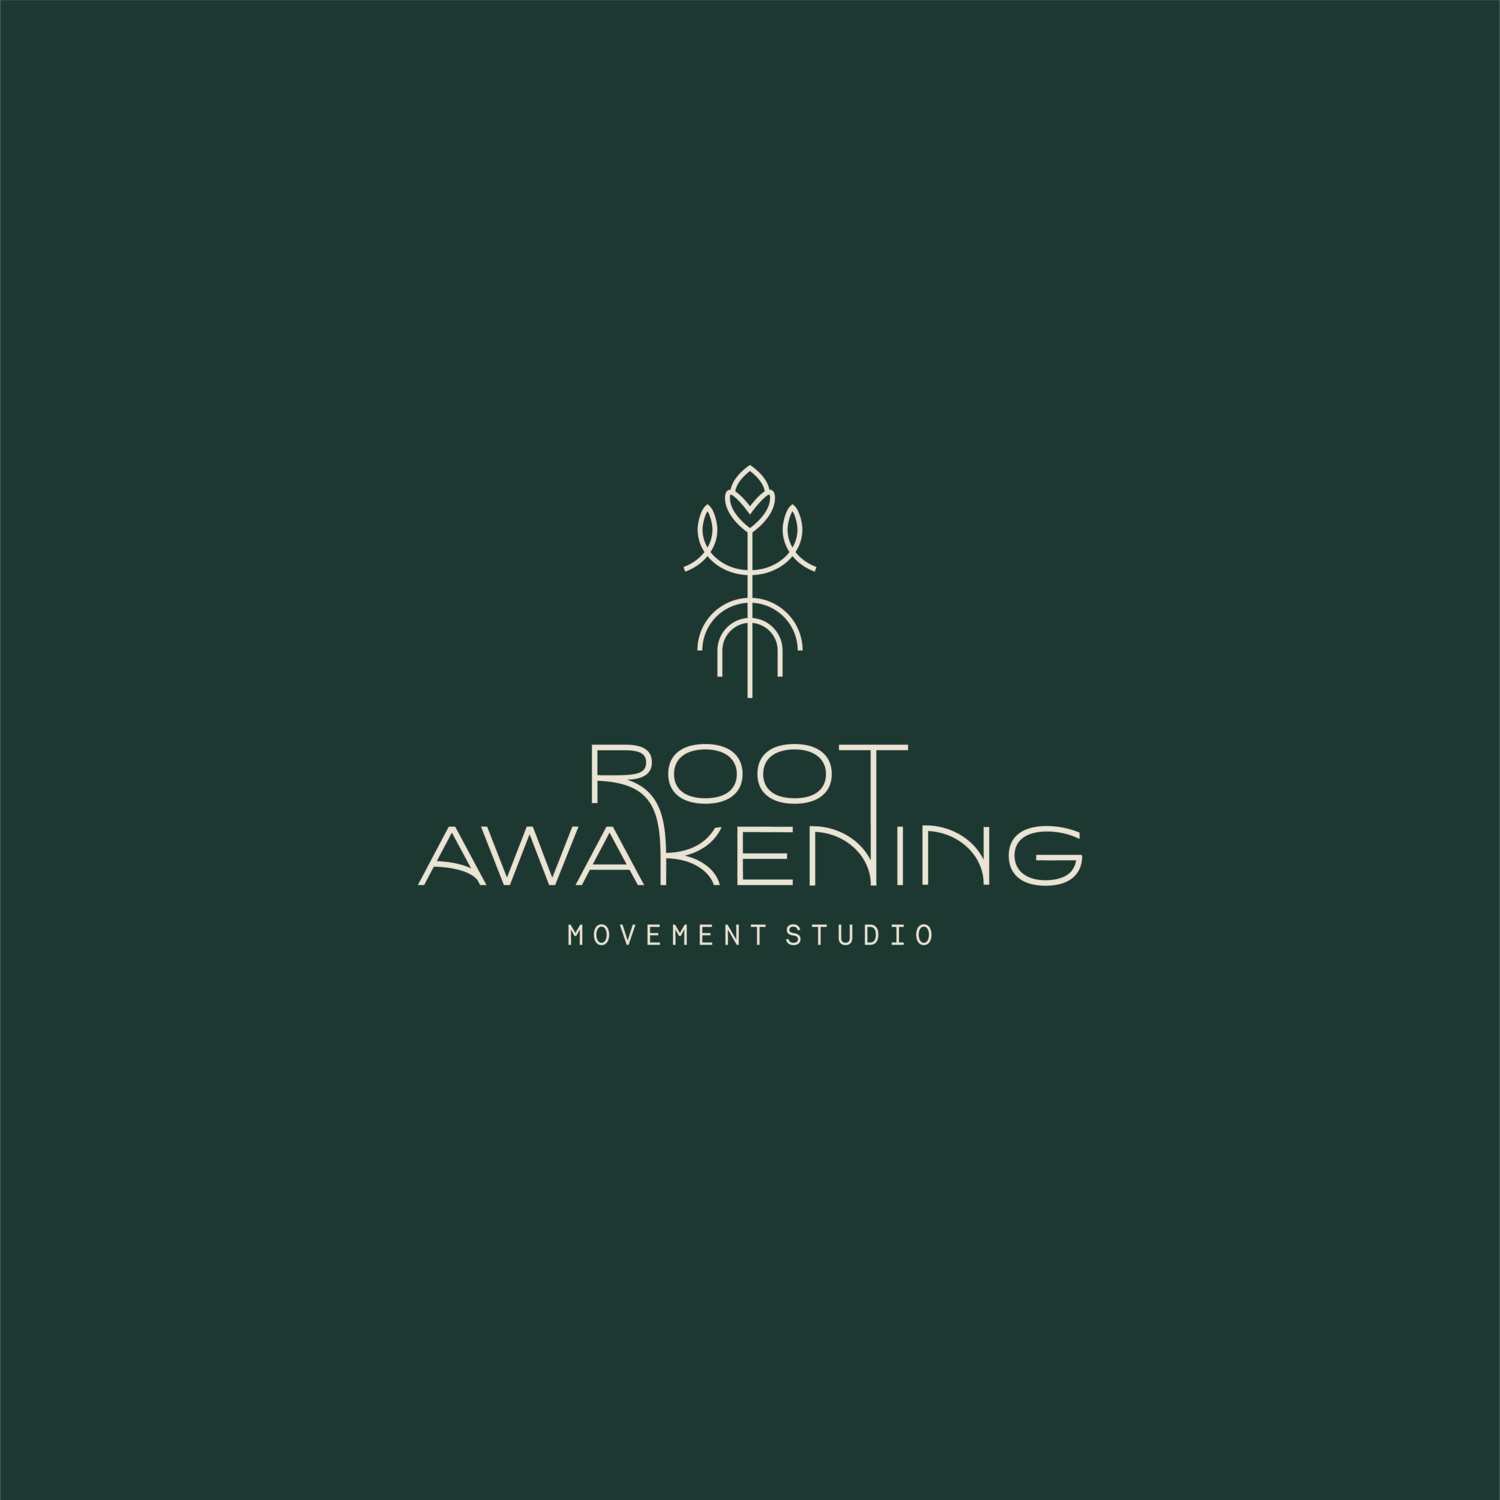  Root Awakening